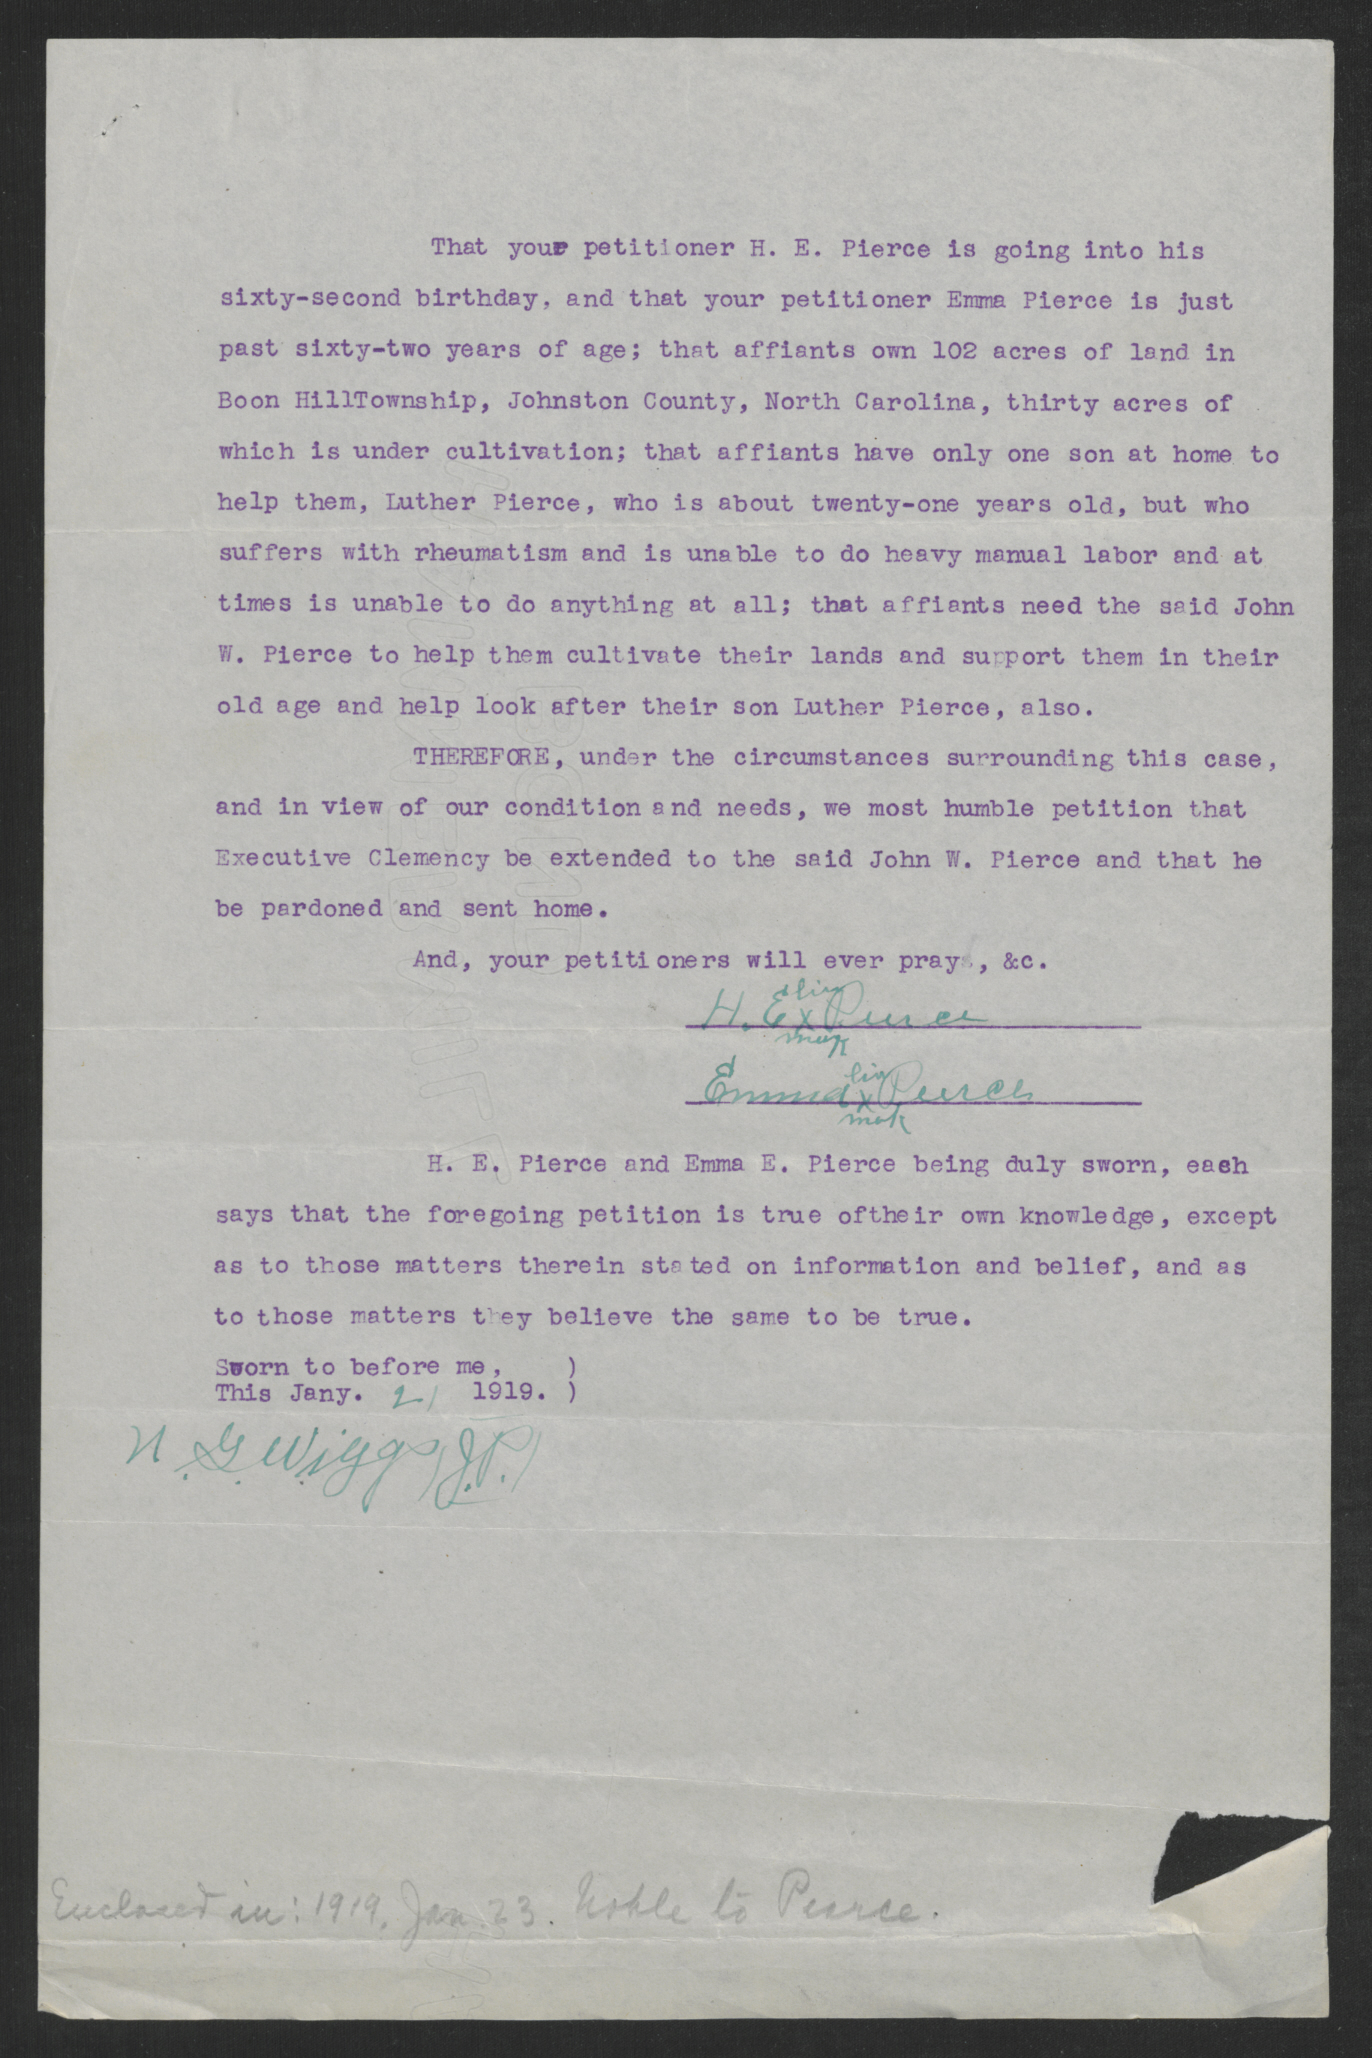 Affidavit of Hezekiah and Emma Pearce, January 21, 1919, page 2